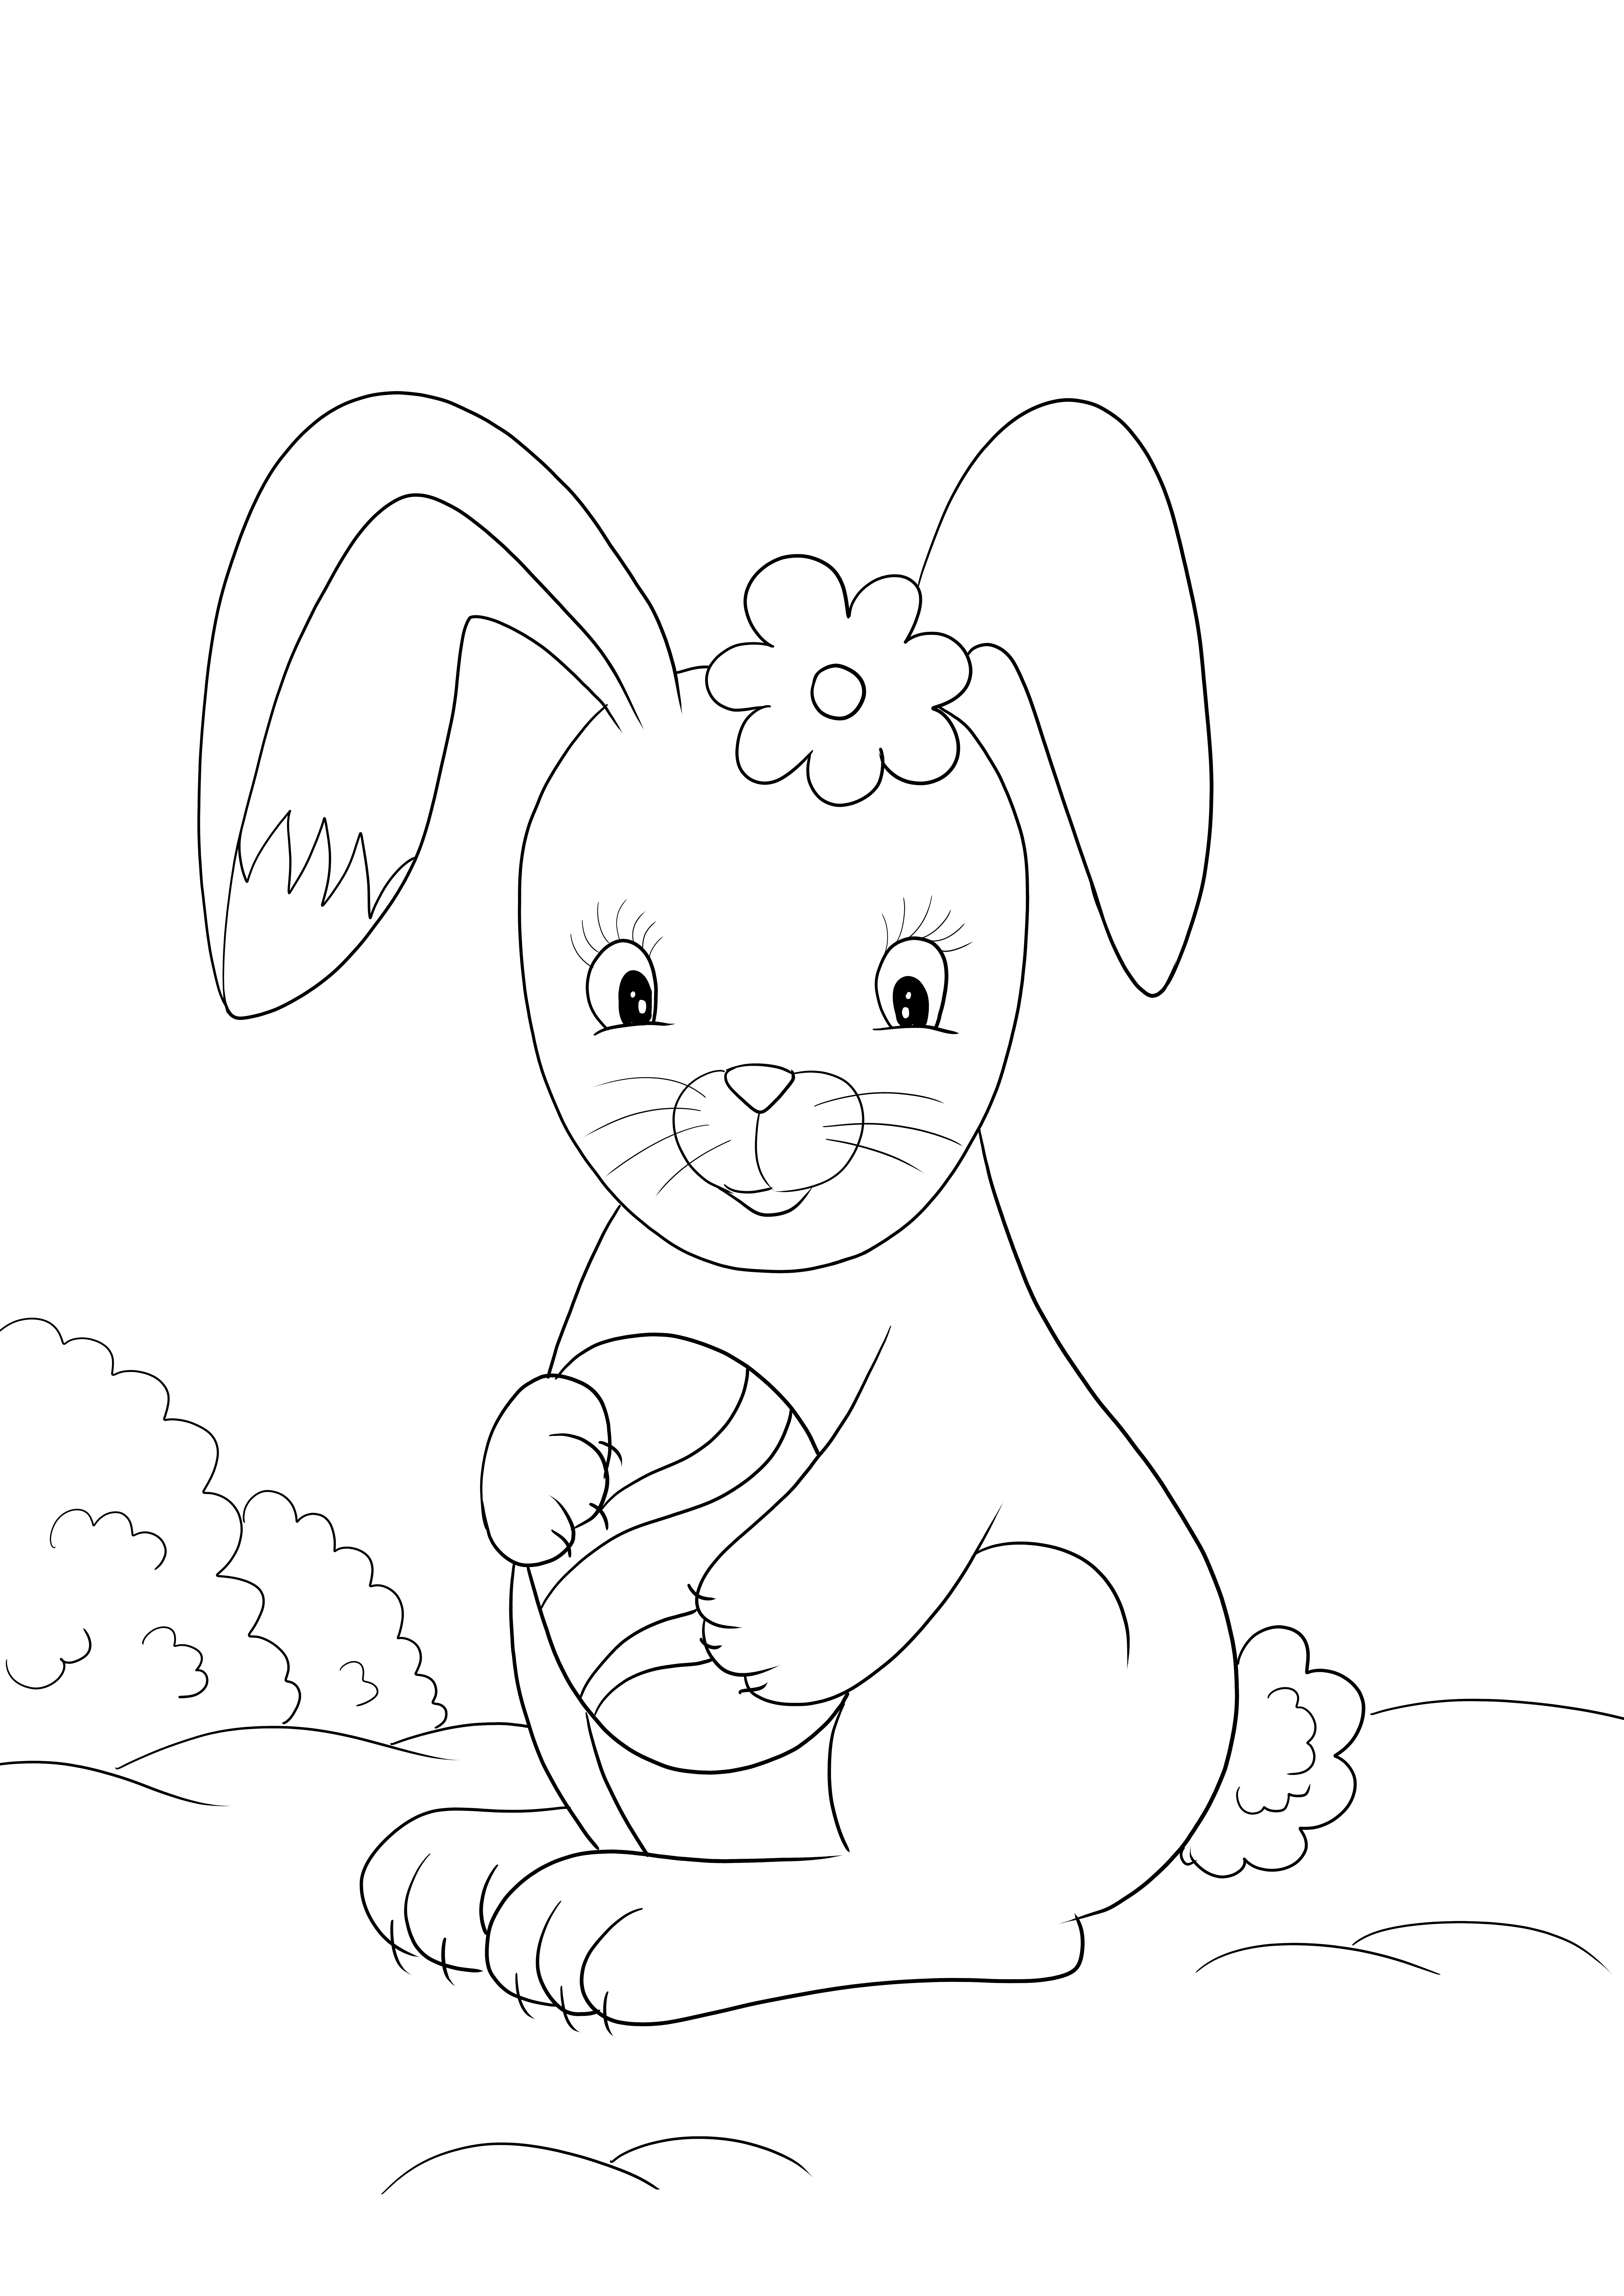 Immagine da colorare di coniglietto di Pasqua carino per il download o la stampa gratuiti